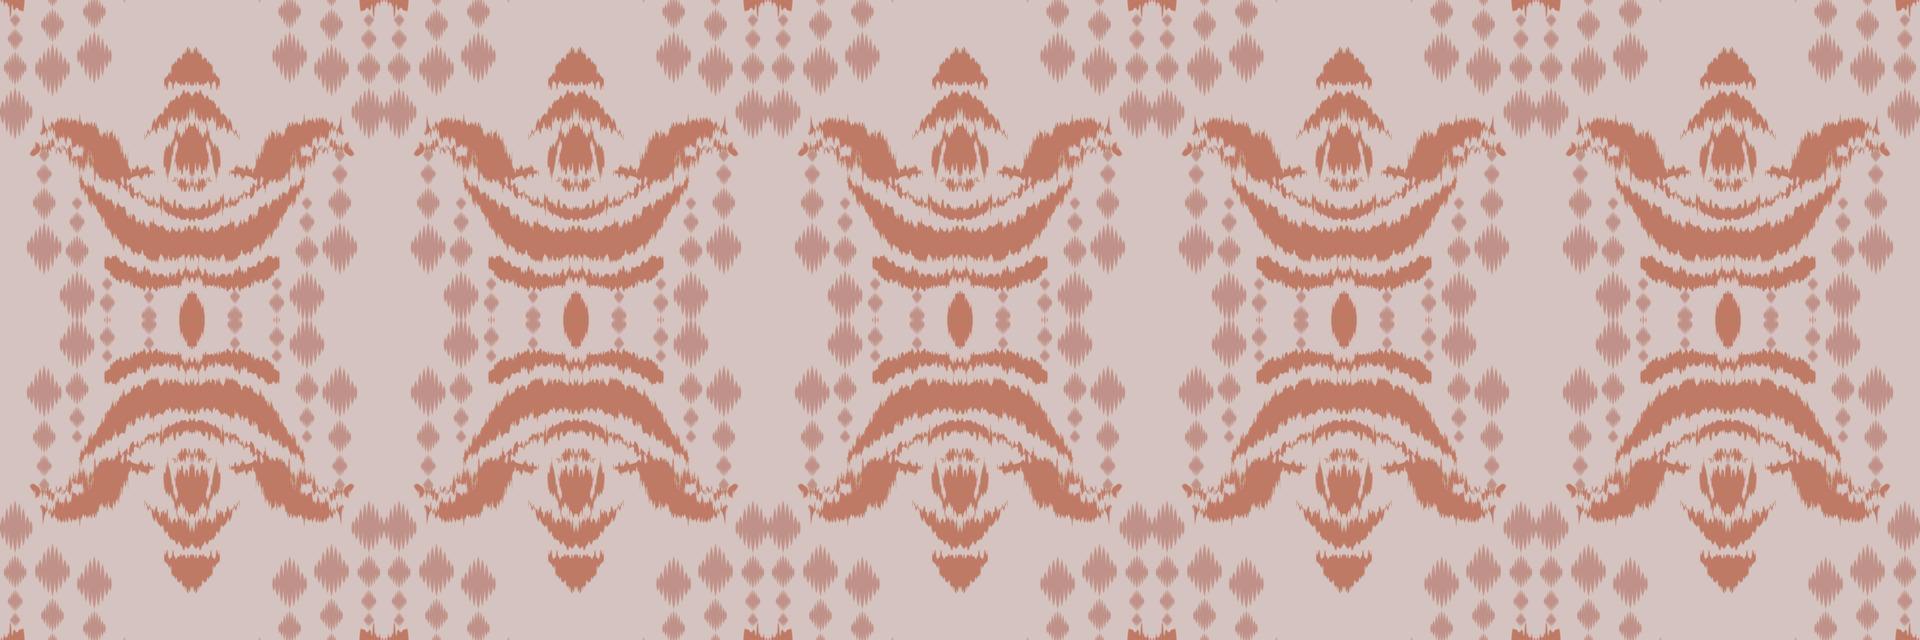 motivo têxtil batik ikat flores padrão sem costura design de vetor digital para impressão saree kurti borneo tecido borda escova símbolos amostras roupas de festa